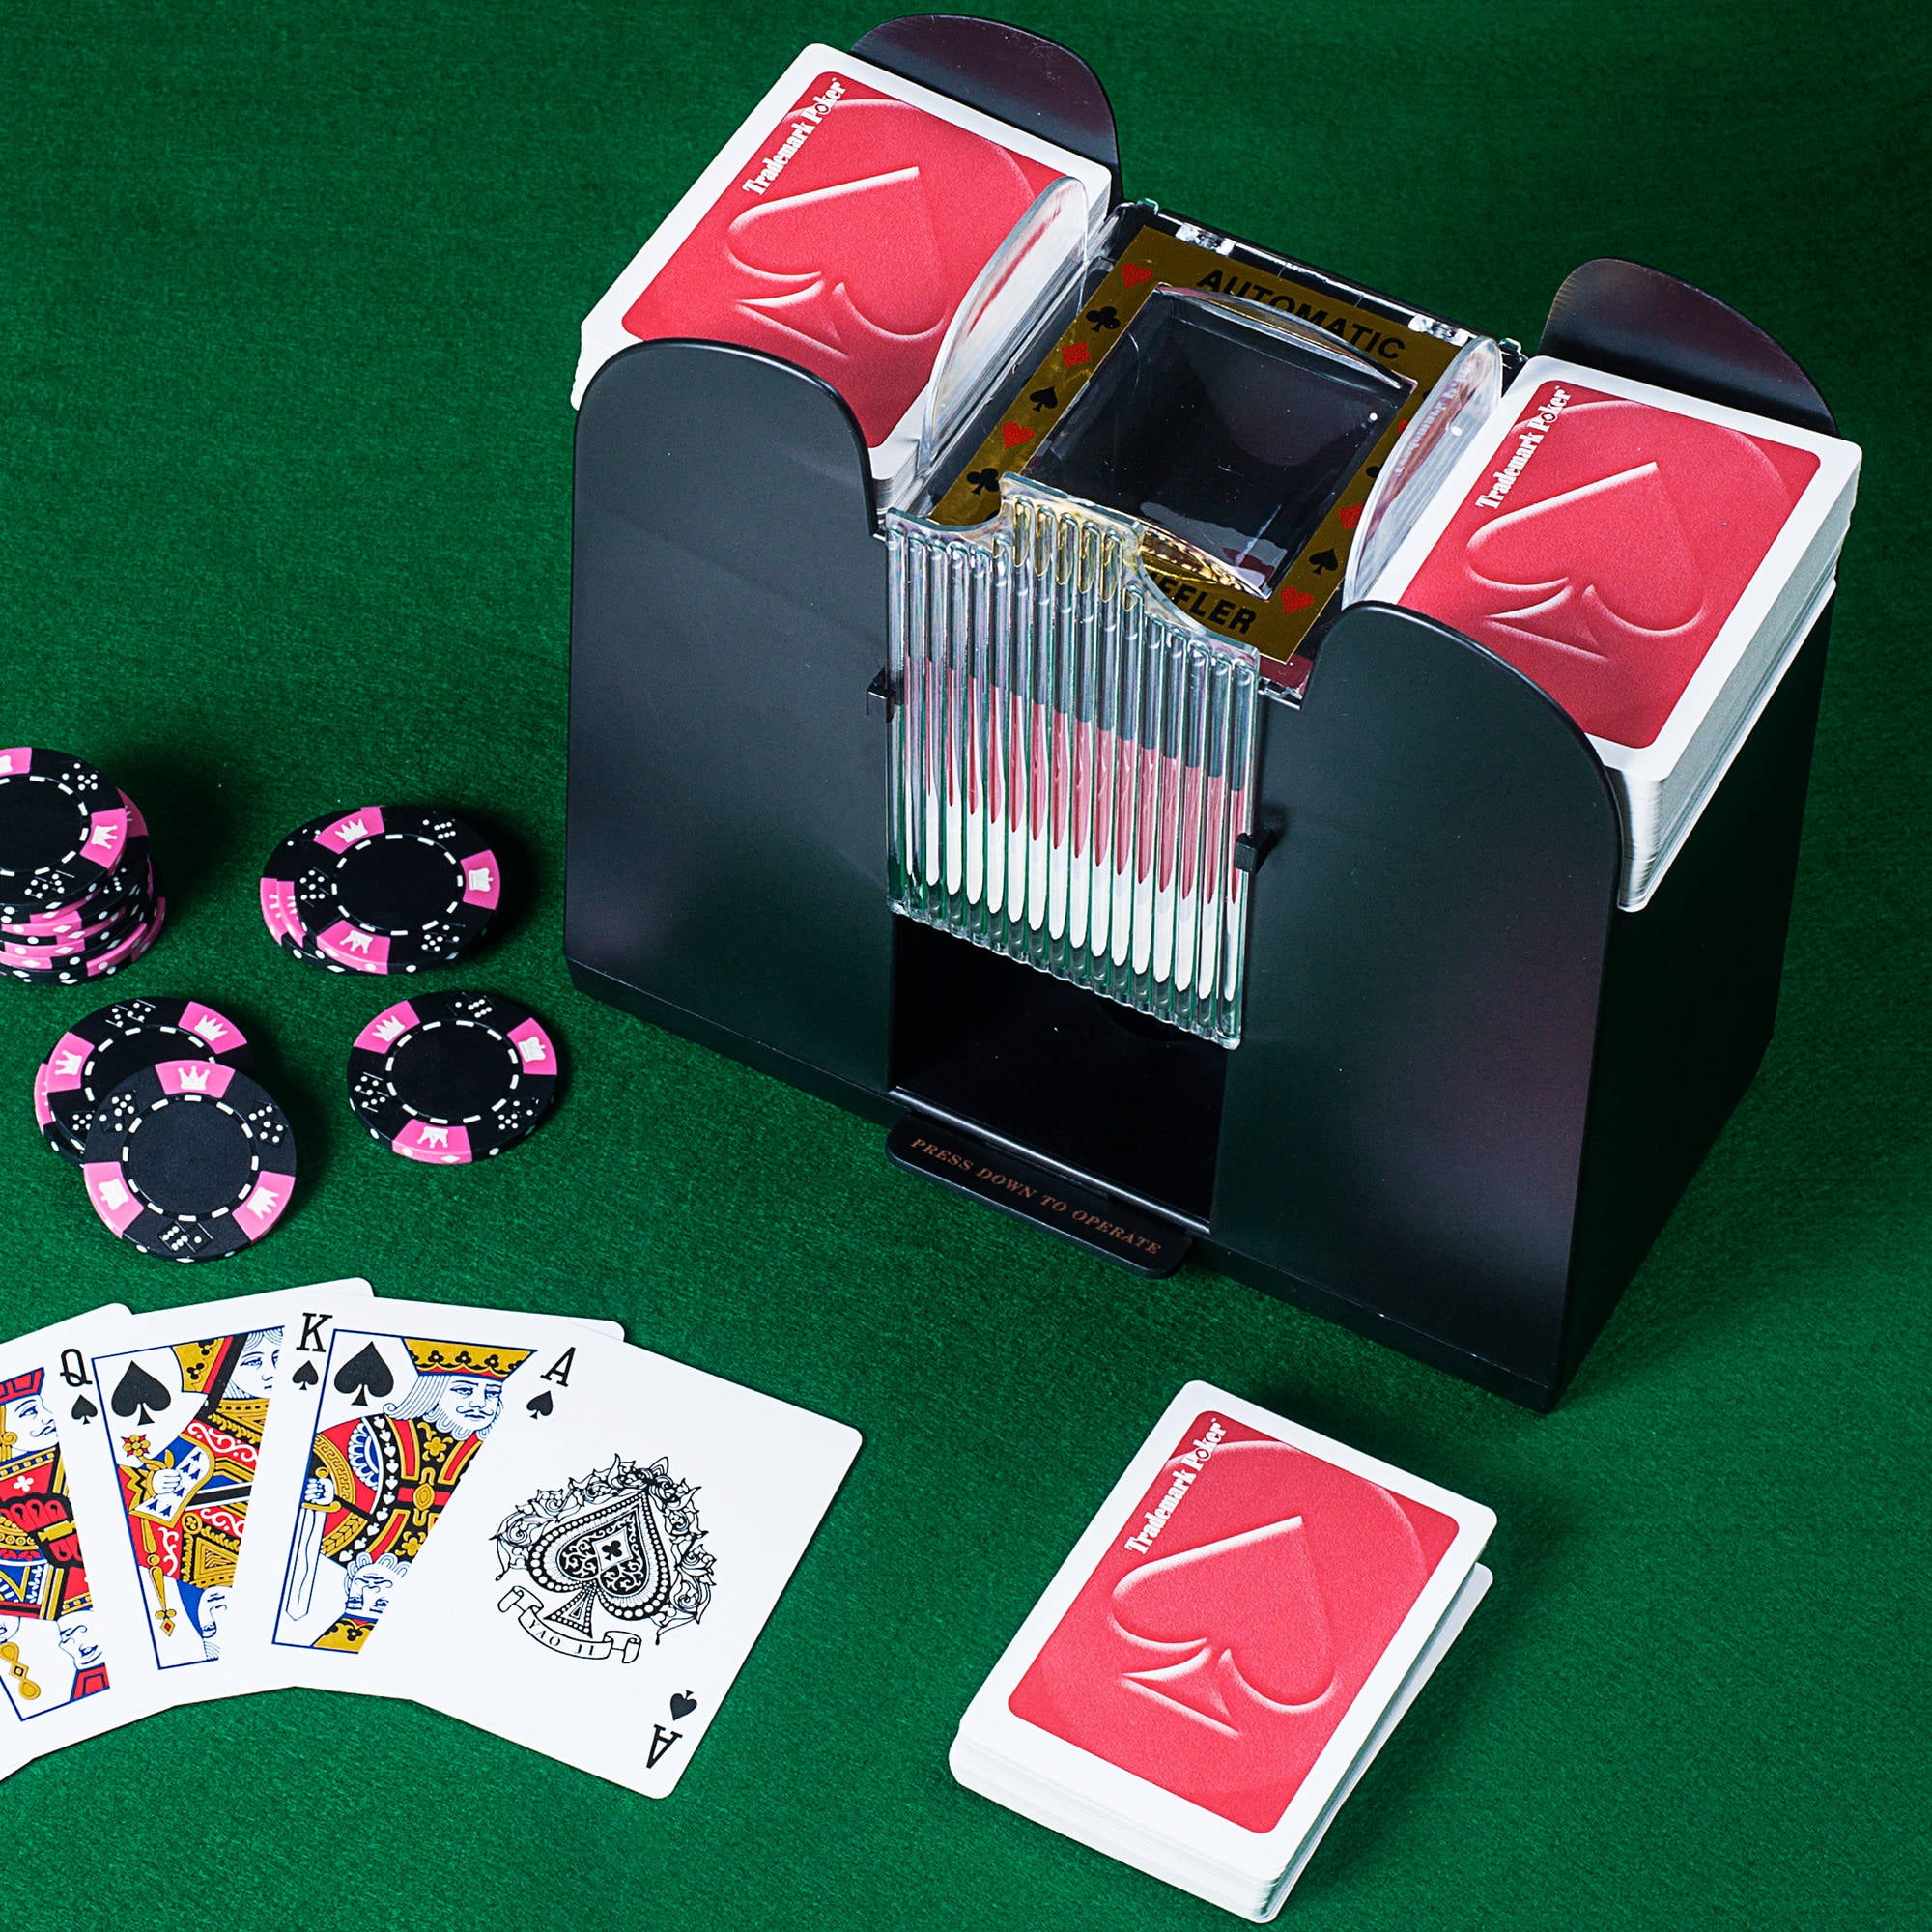 BLENGA Electronic Poker Shuffler Battery Operated Card Game 4 Decks of Card Shuffler Poker Card Board Game Automatic Shuffler